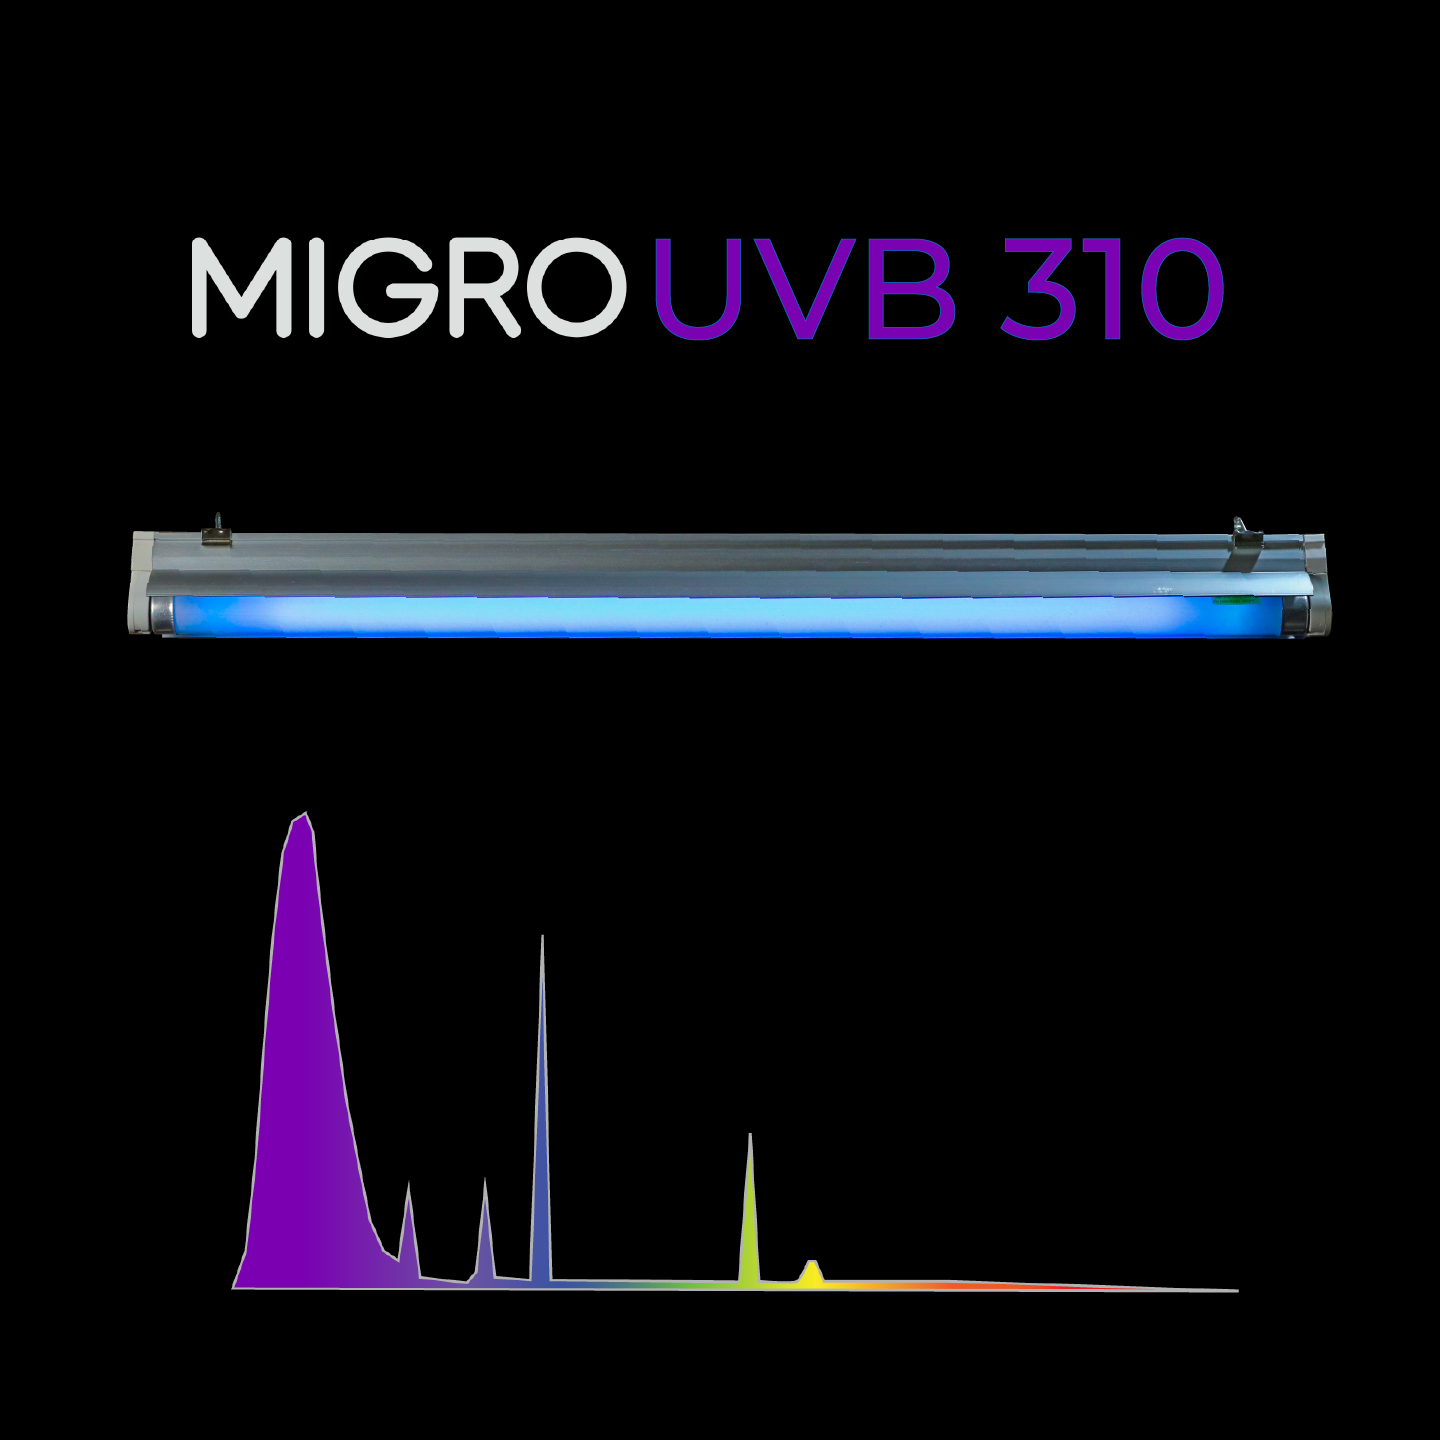 Lámpara MIGRO UVB 310 y tubo fluorescente